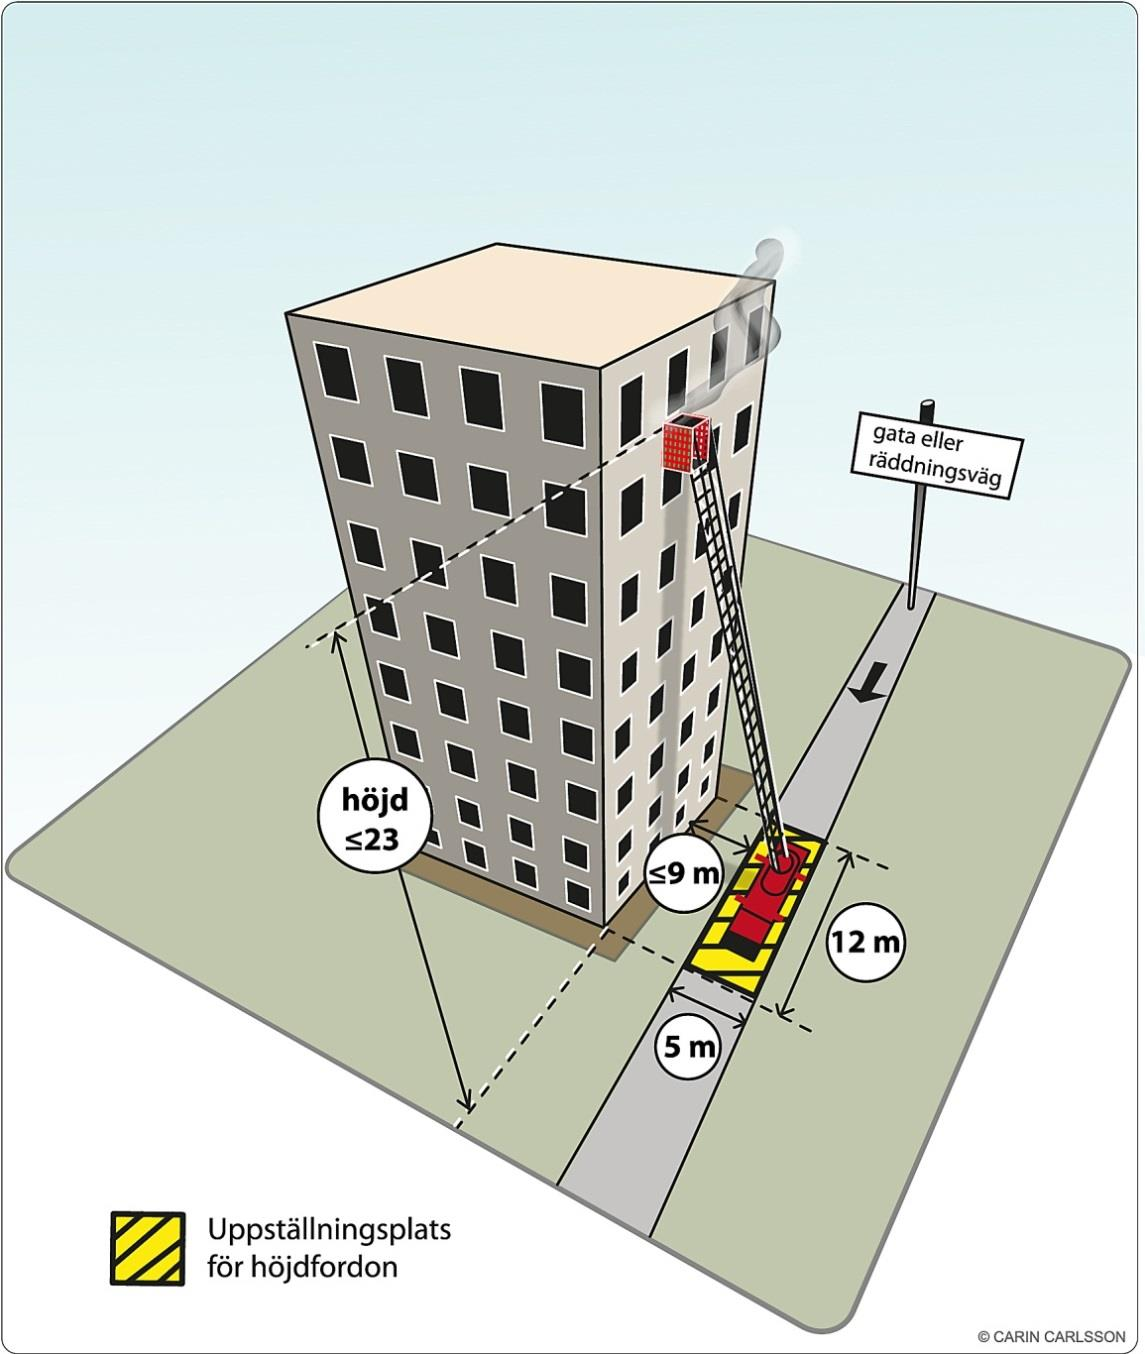 205-06-7 Höjdfordon Räddningstjänstens höjdfordon kan användas för utrymning under förutsättning att körbar väg/räddningsväg och uppställningsplatser för höjdfordon finns.